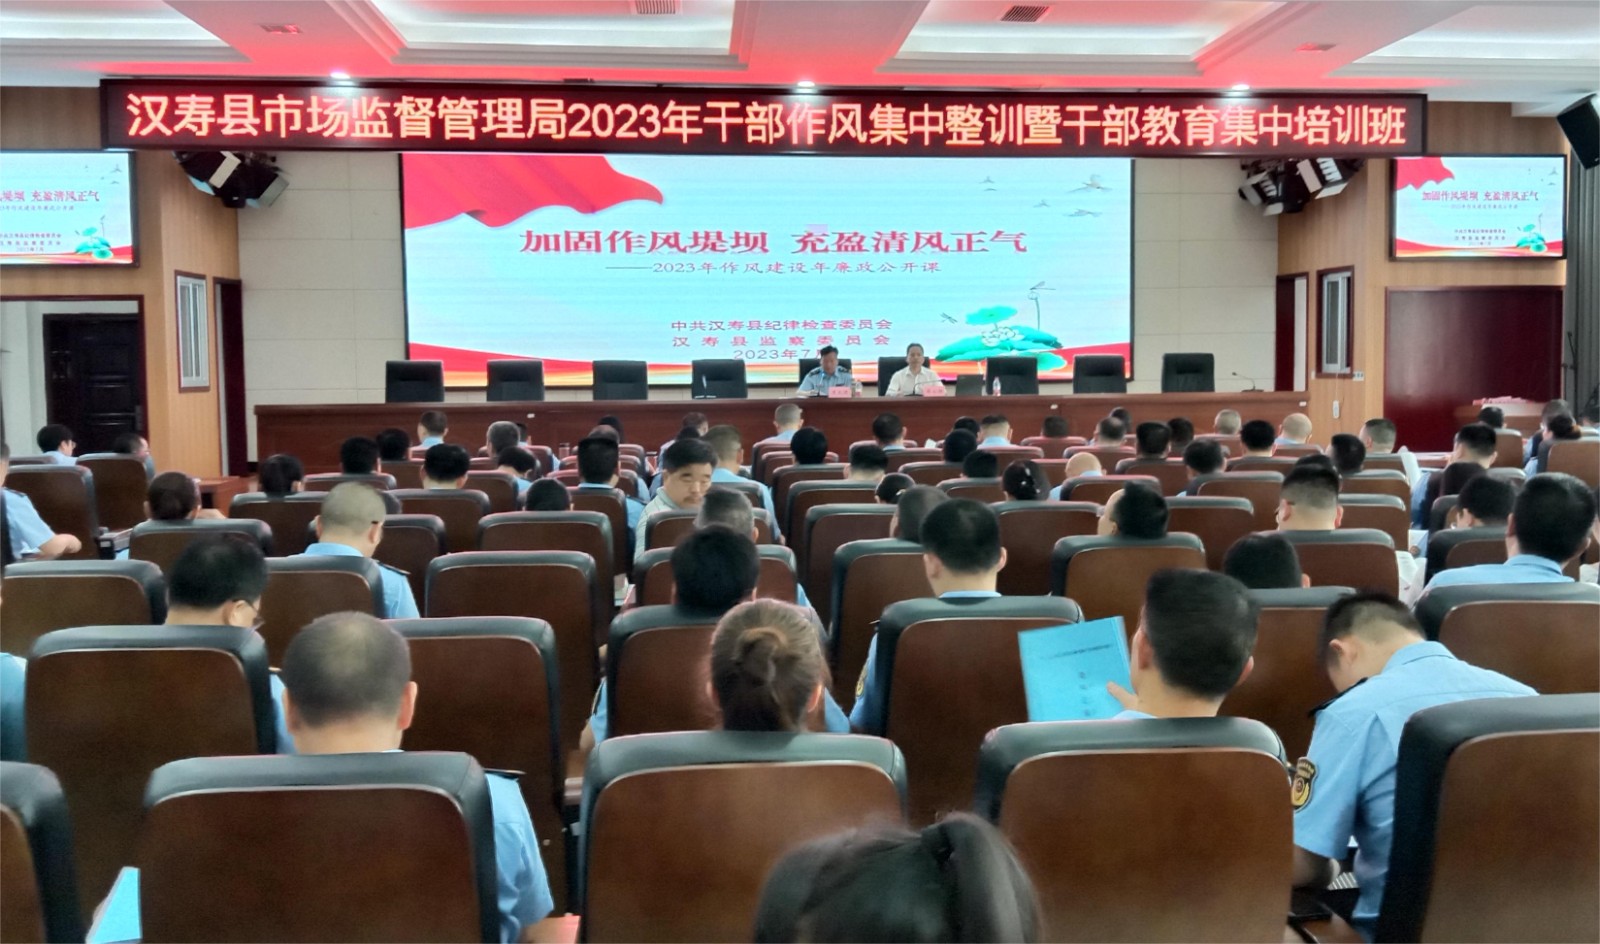 汉寿县市场监督管理局开展2023年干部作风集中整训暨干部教育集中培训